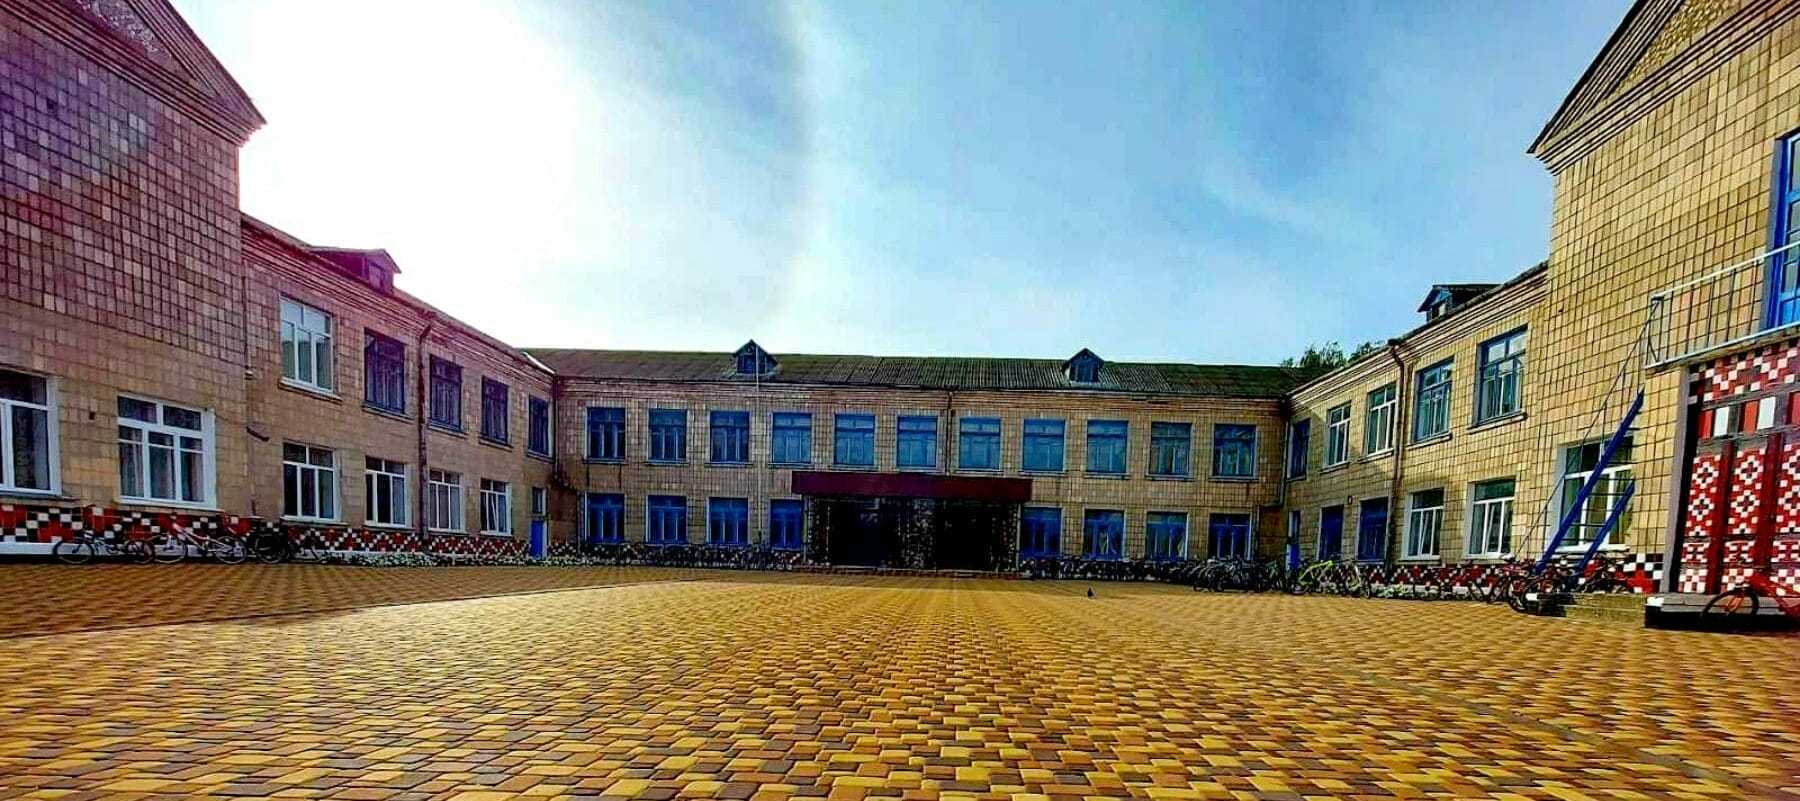 Nosivka Primary School